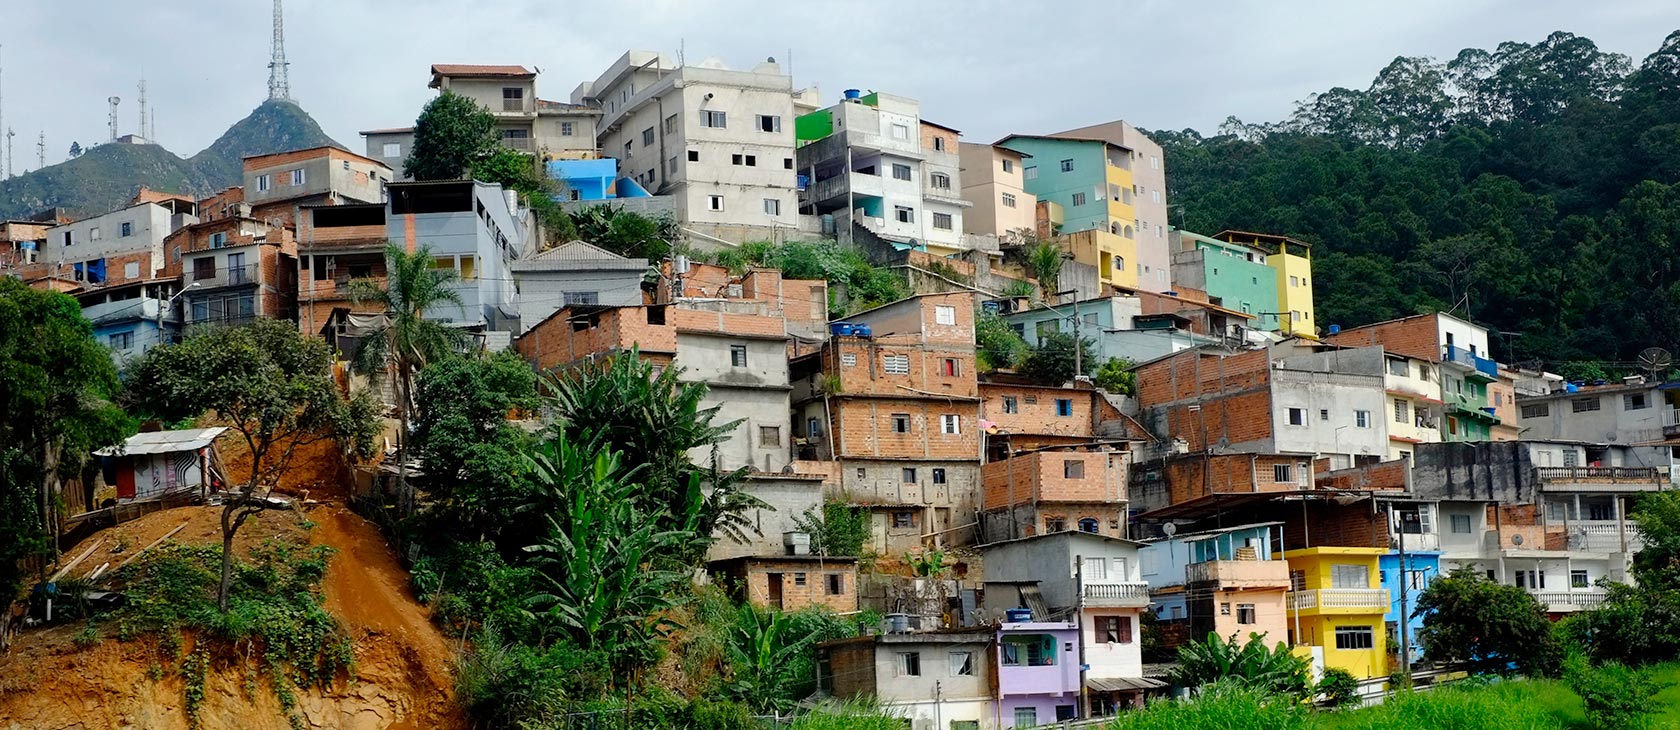 Multicolored ramshackle housing of a Brazilian favela